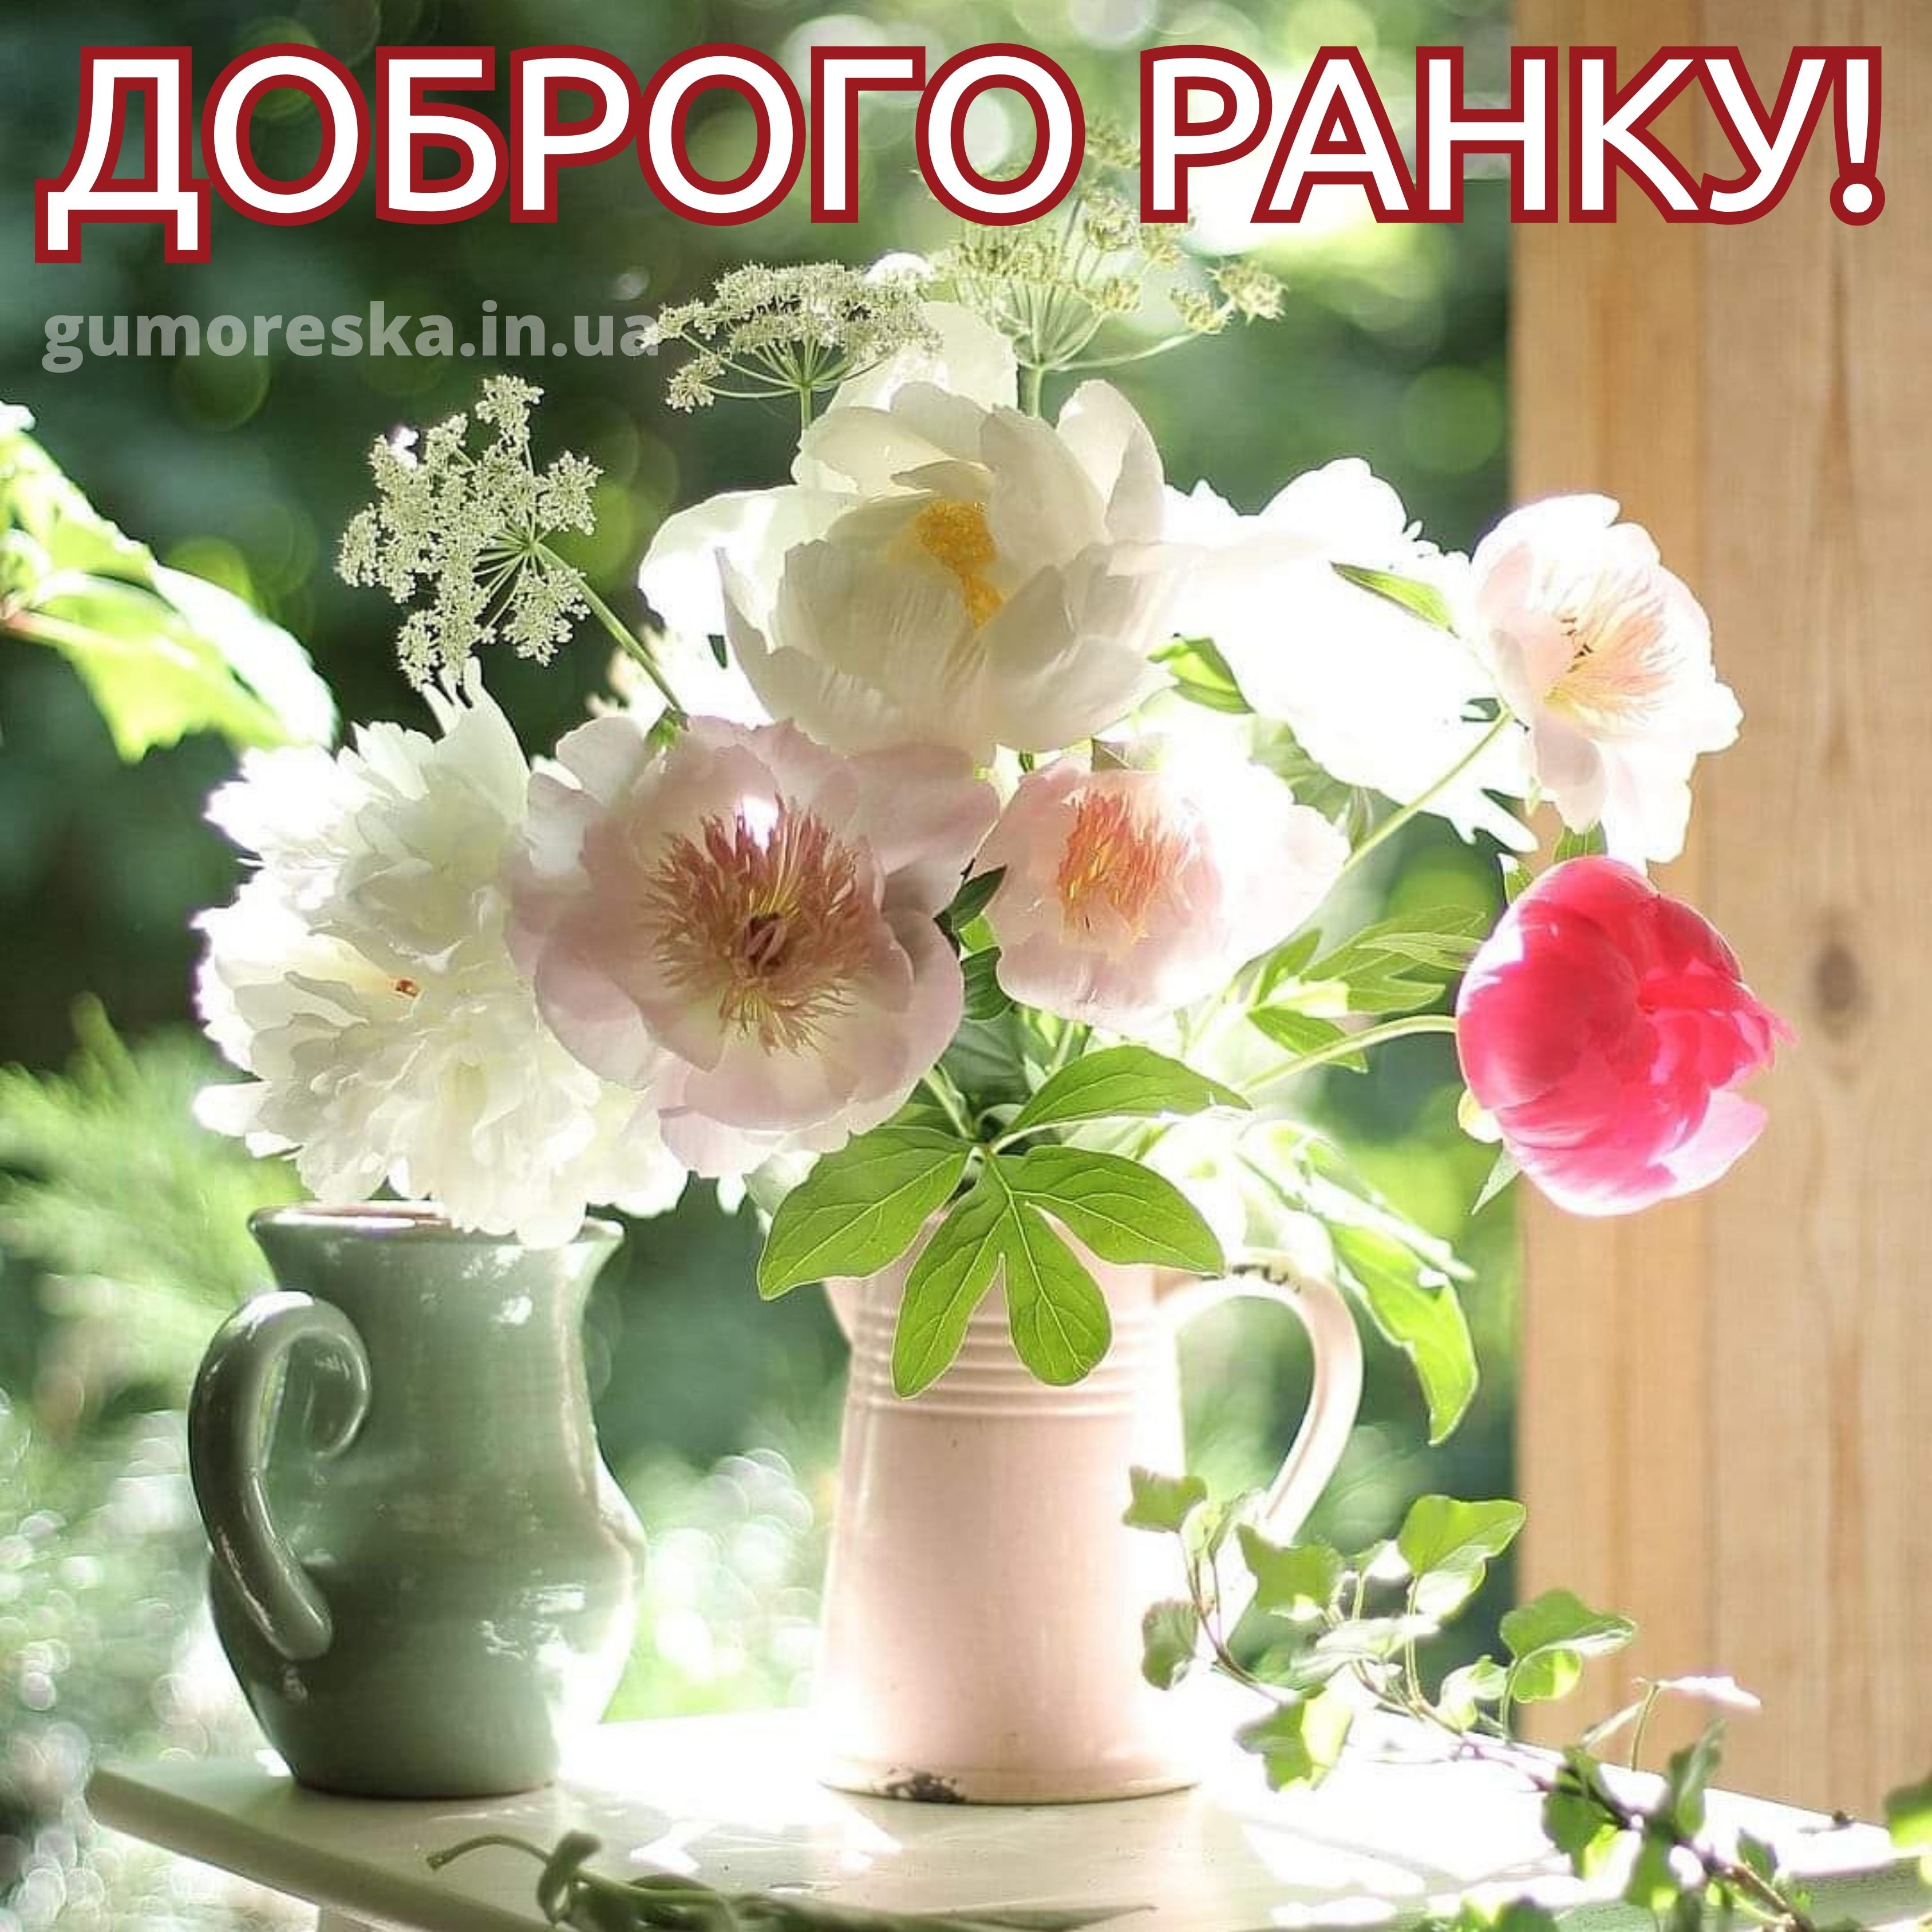 Доброго дня нежные цветы. Утренние цветы. Нежный цветок. Летние цветы в вазе. Нежные солнечные цветы.